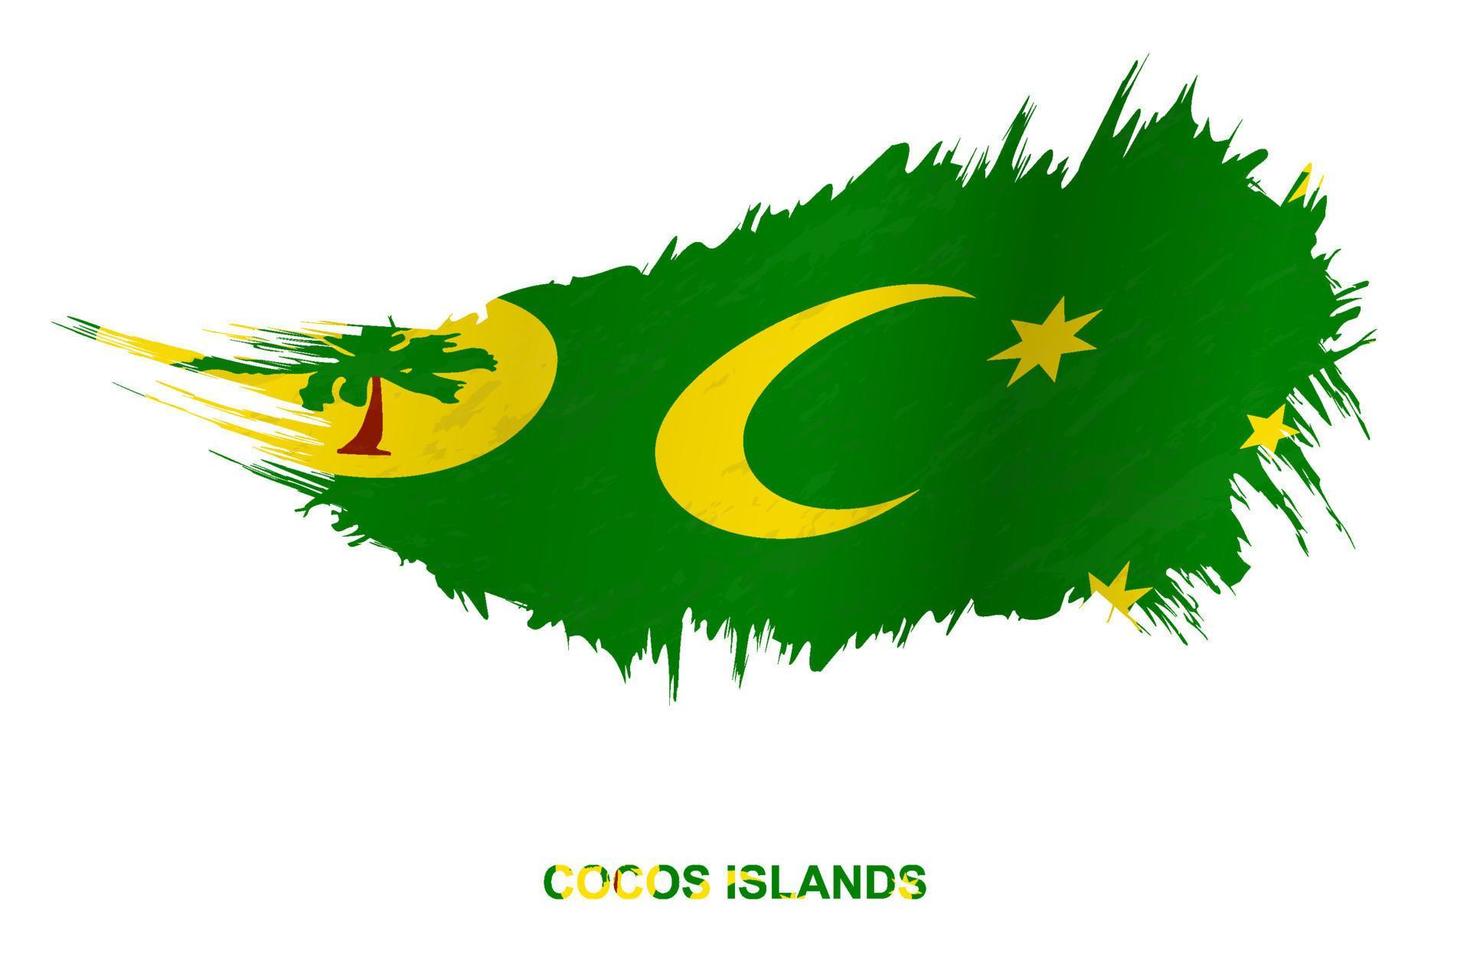 bandera de las islas cocos en estilo grunge con efecto ondulante. vector